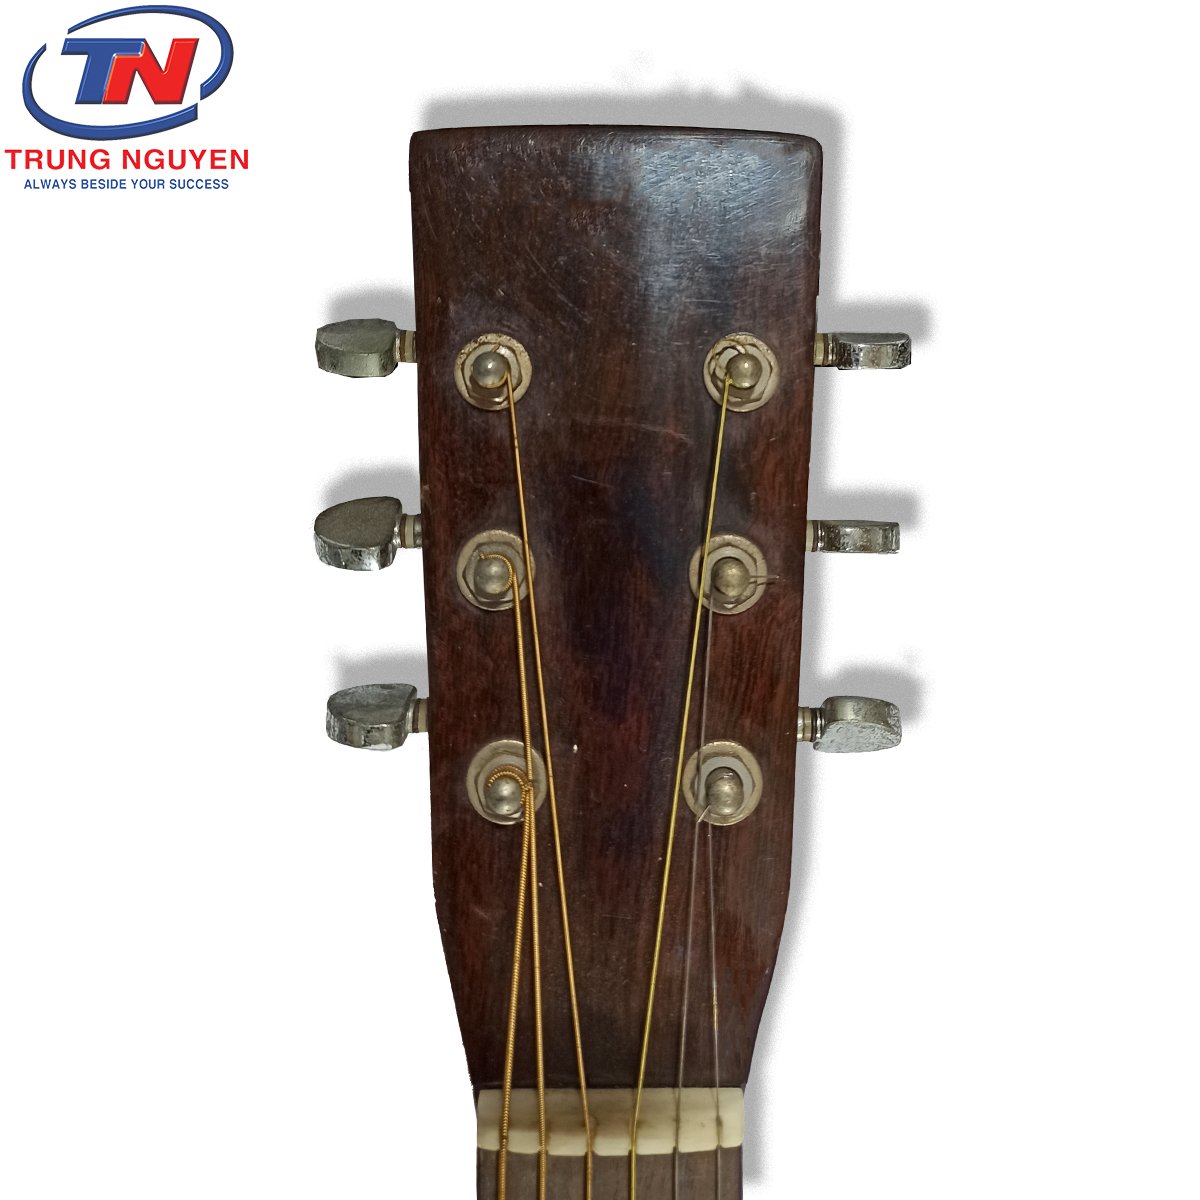 Đàn guitar Việt Nam gỗ cao cấp. Nhạc cụ Trung Nguyên|Chuyên Nhạc cụ